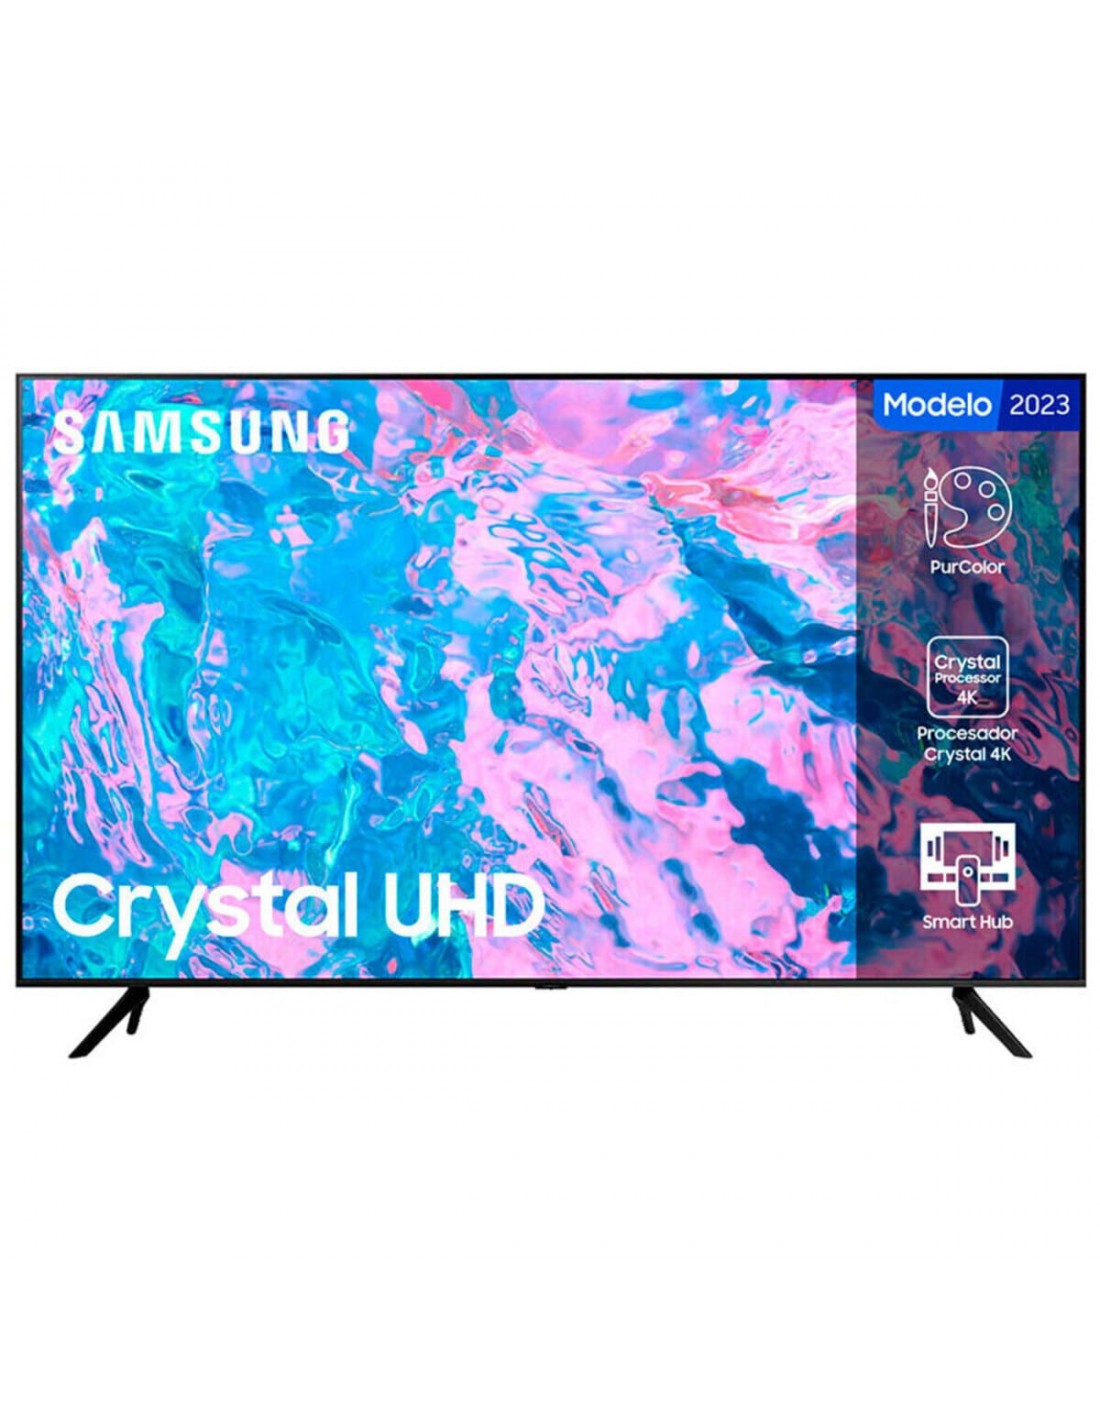 Televisor Samsung 43 pulgadas Crystal UHD Smart TV 4K